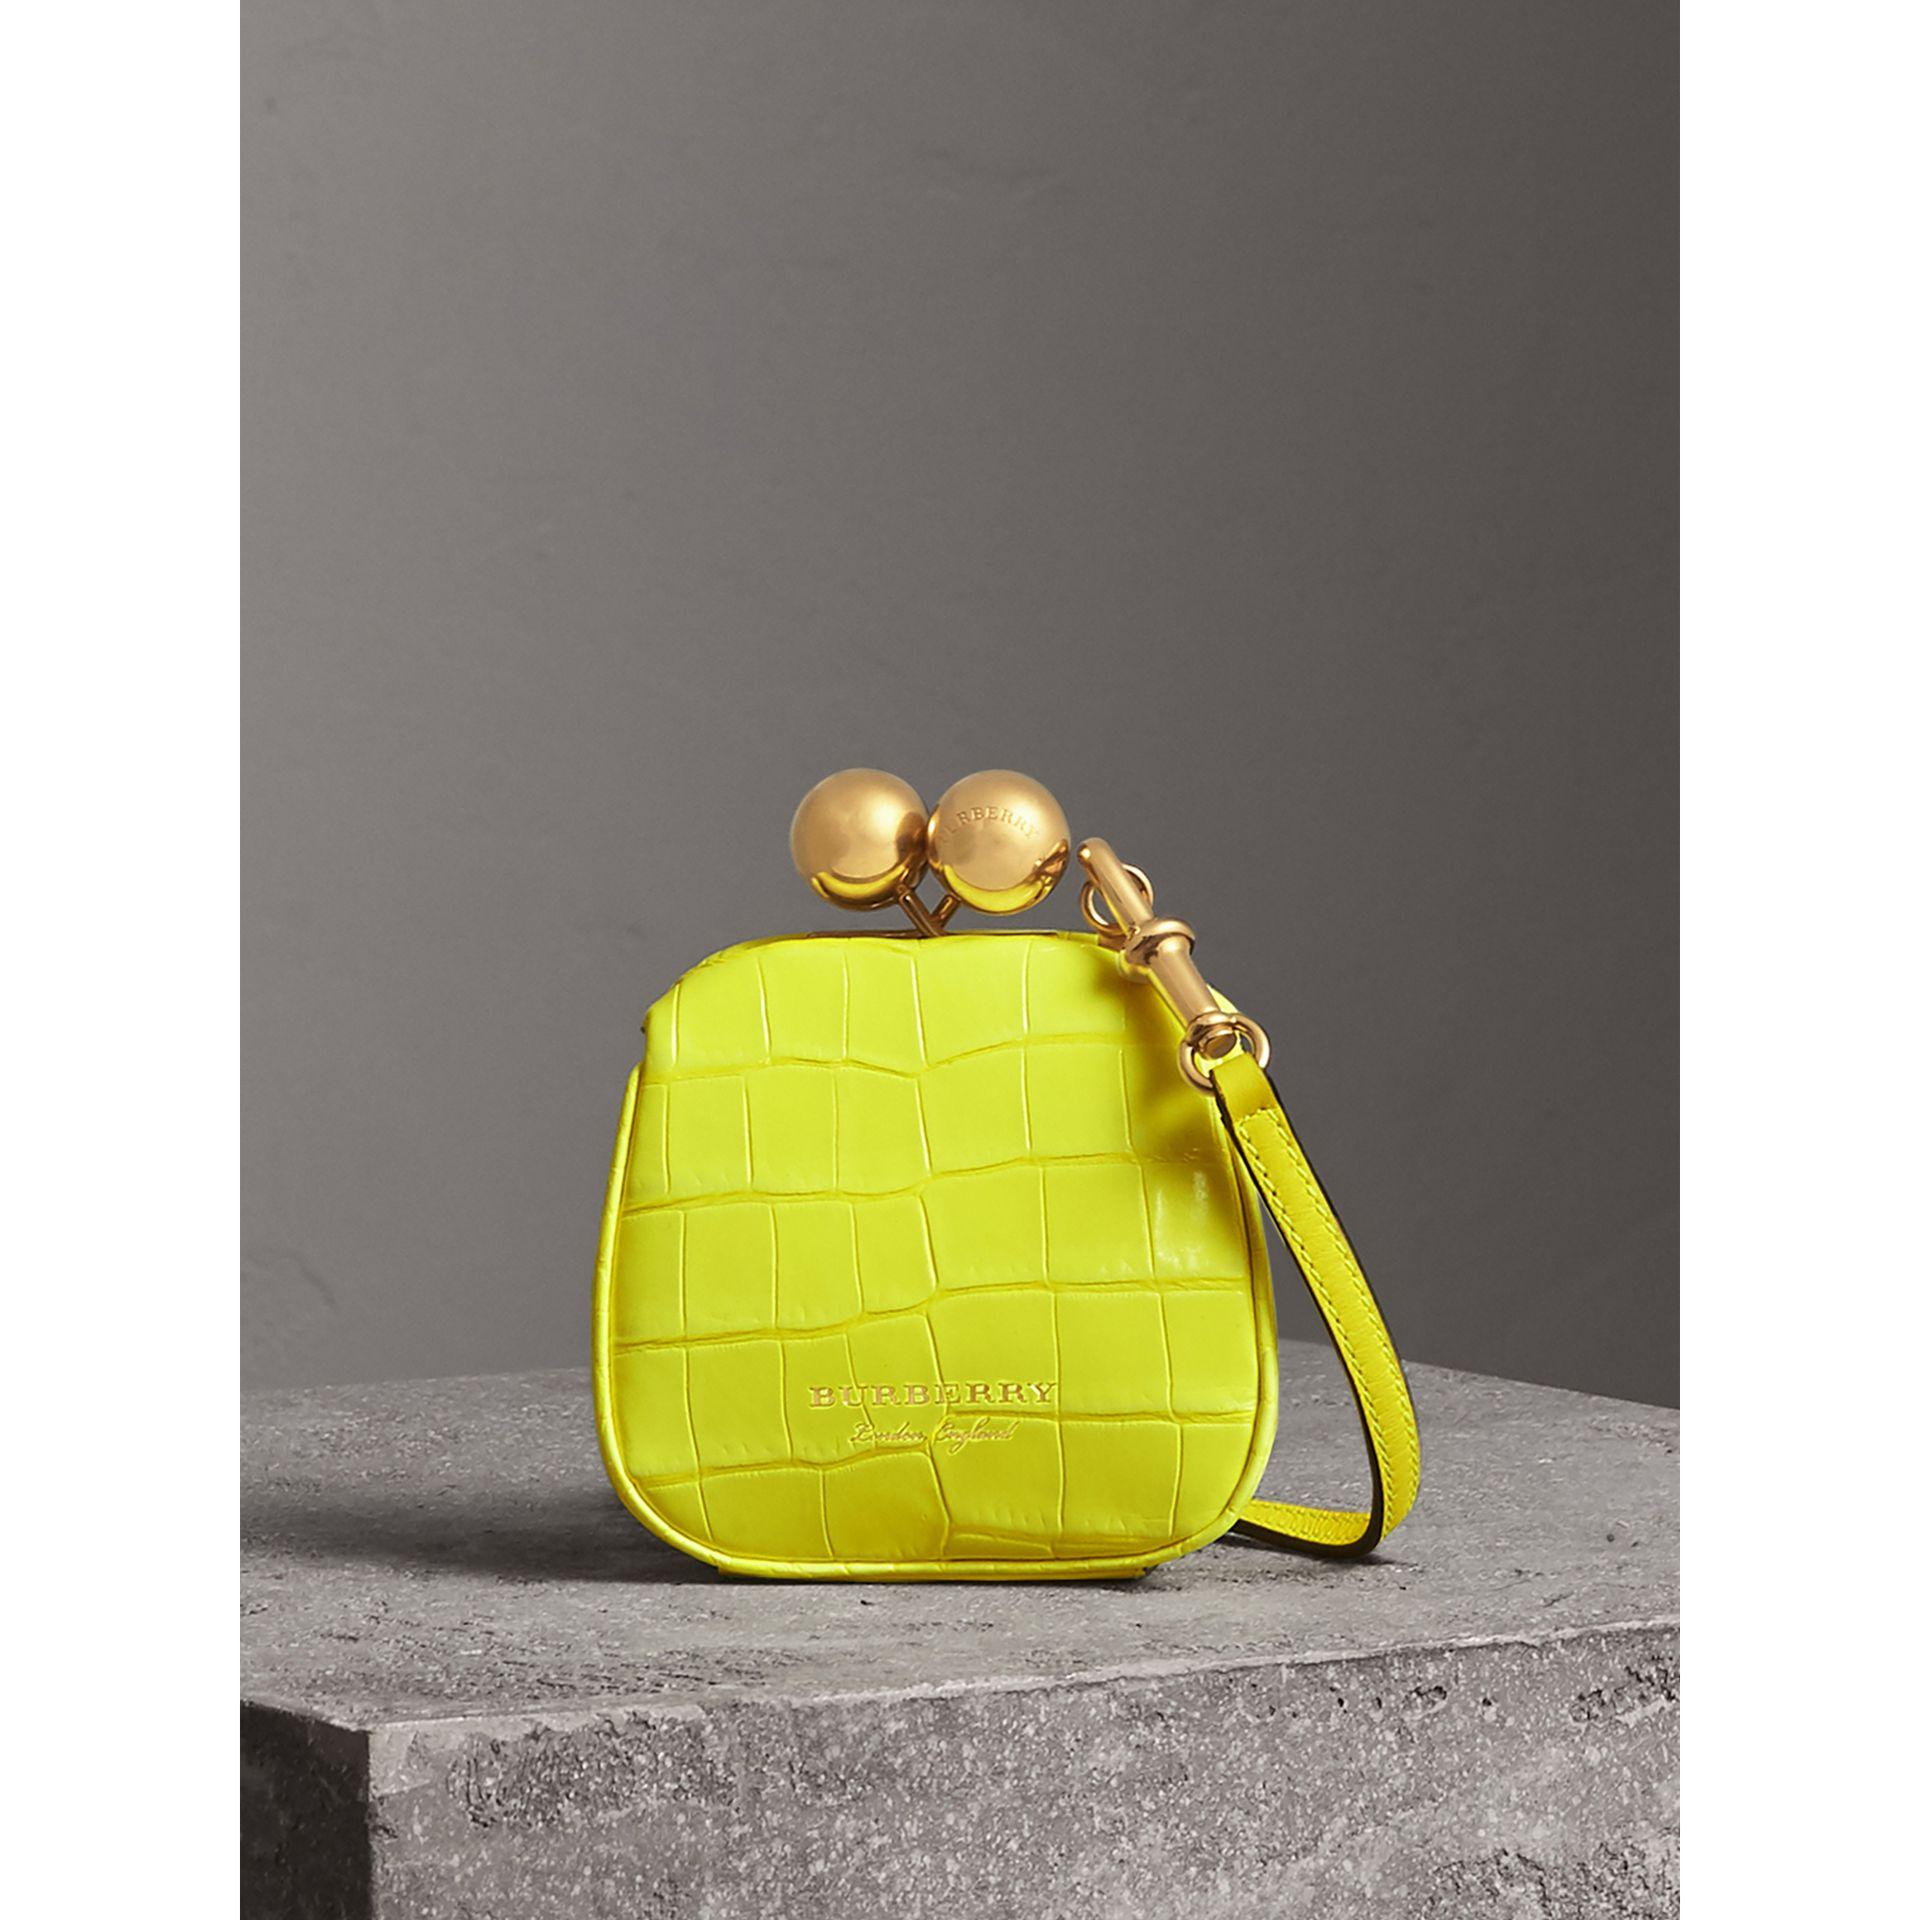 Burberry Alligatorleder-tasche Im Miniformat Mit Bügelverschluss In Neon  Yellow | ModeSens